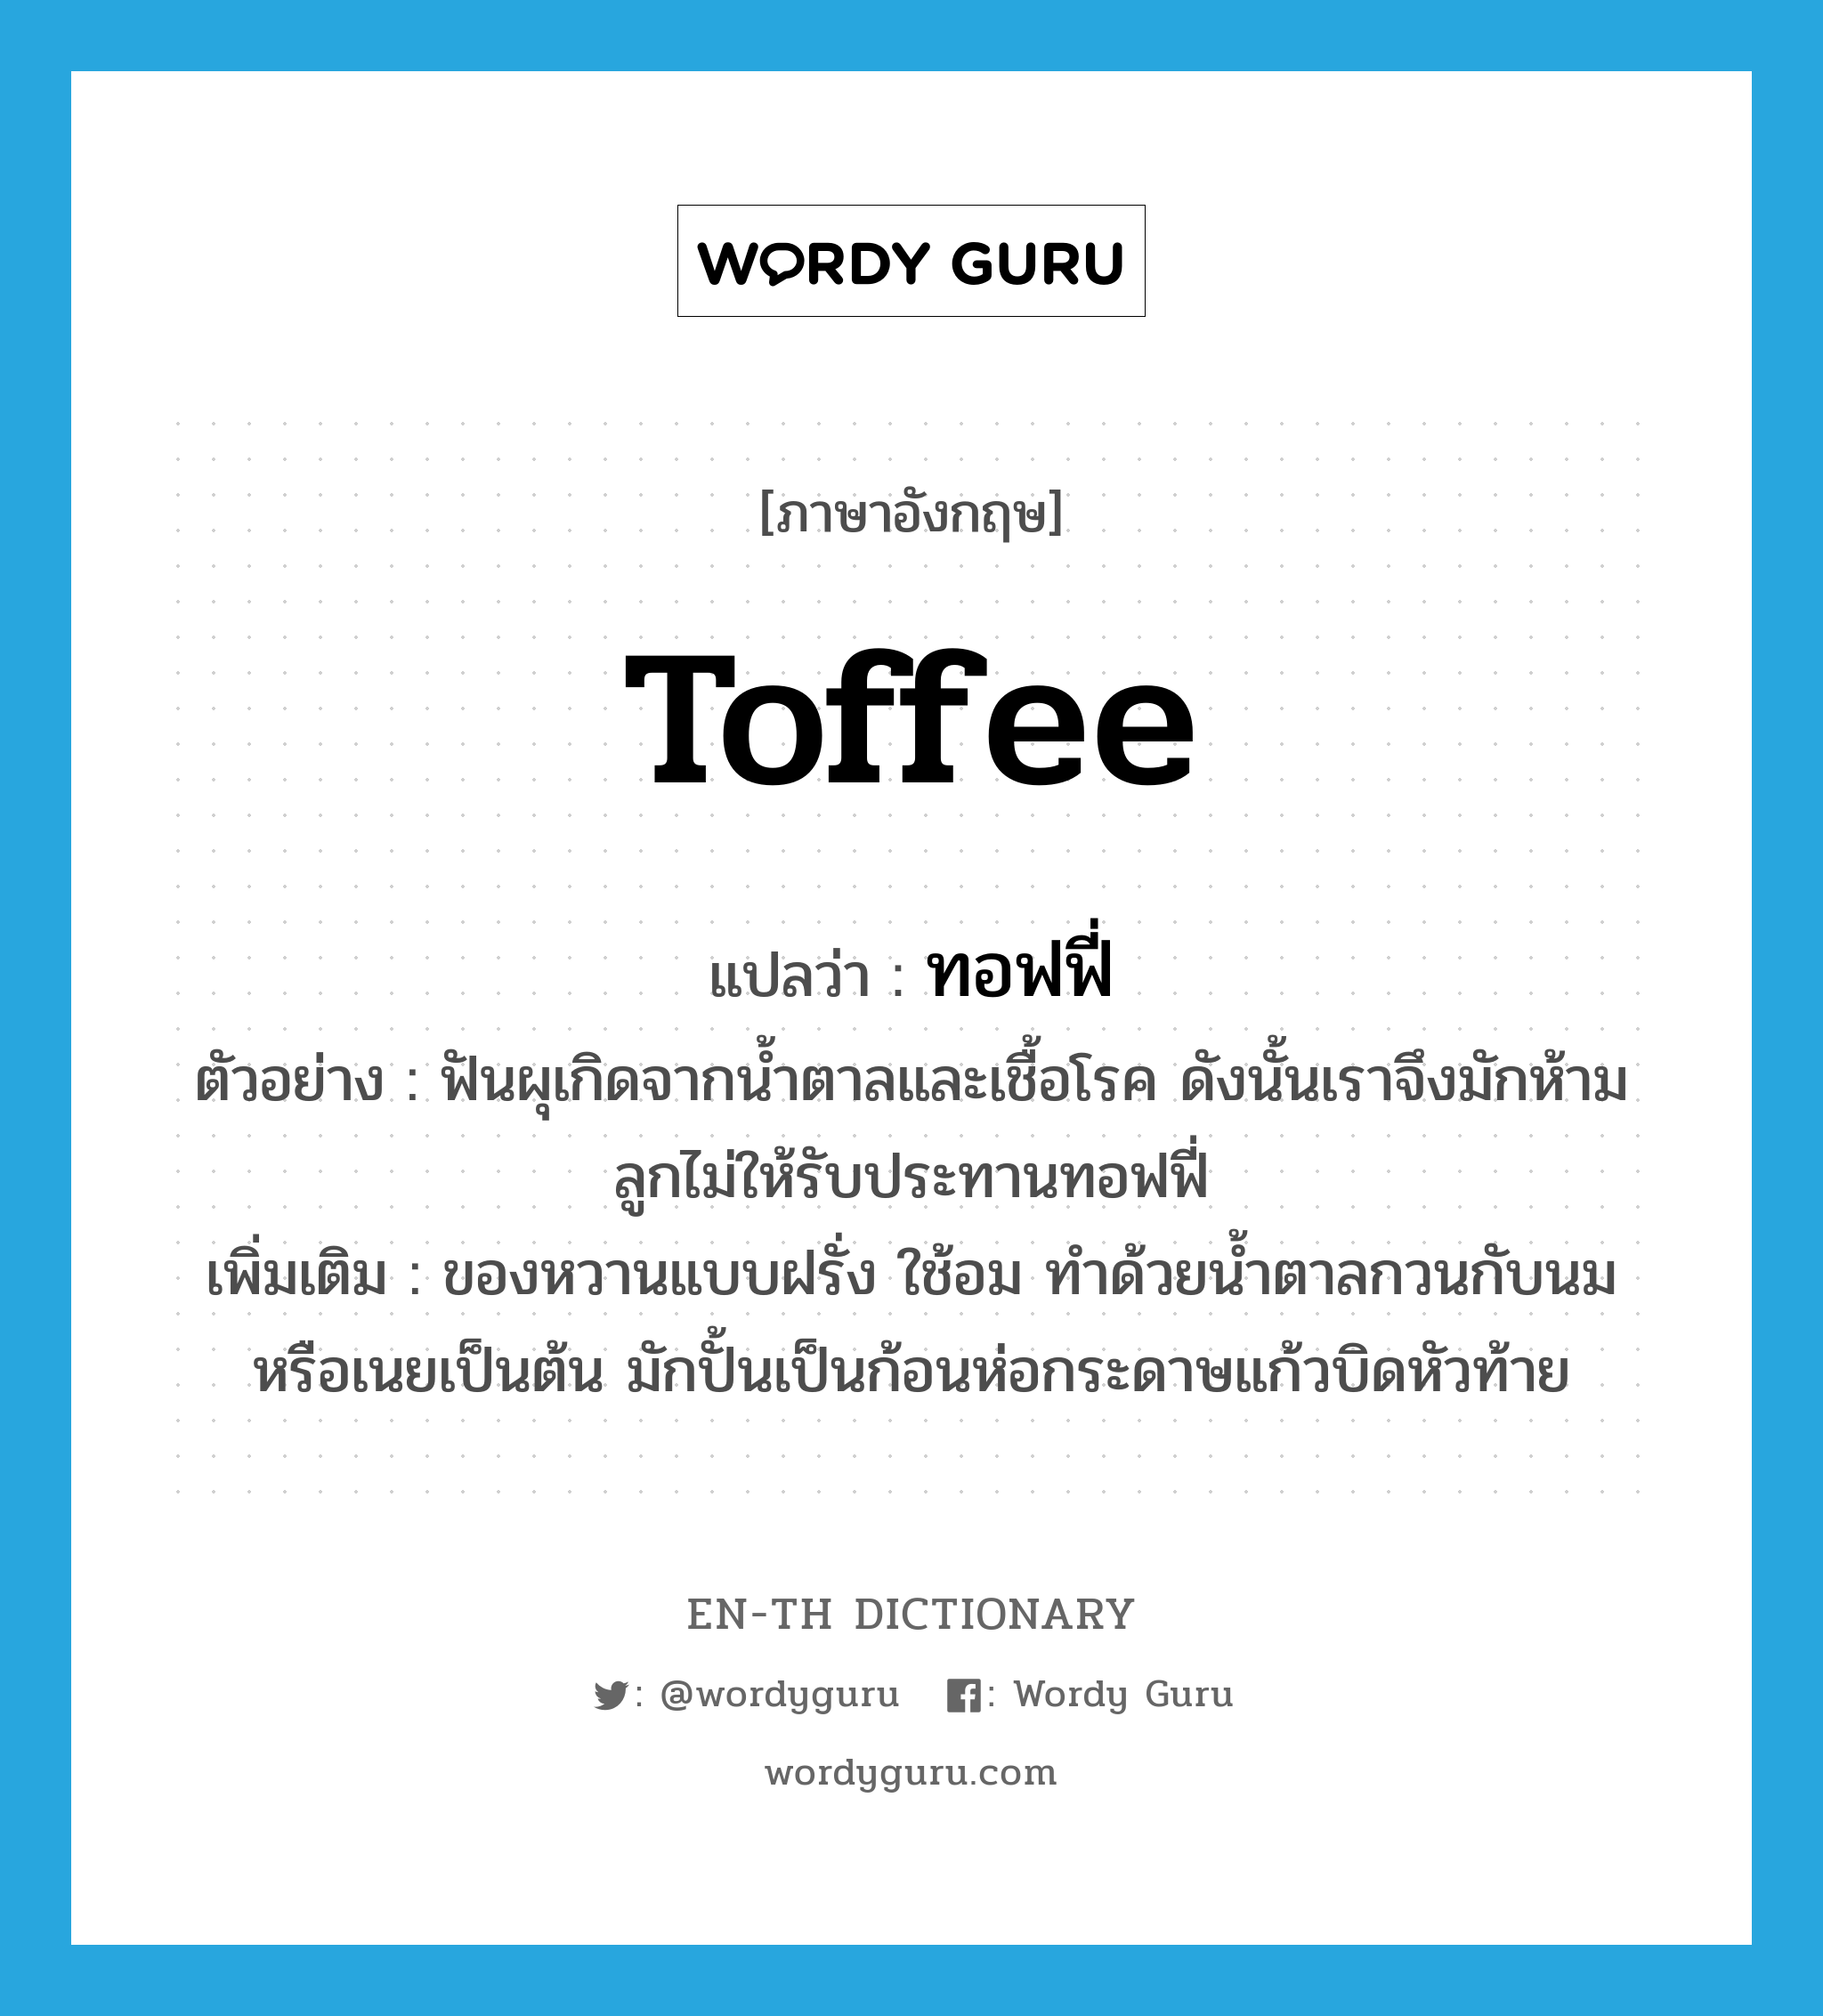 toffee แปลว่า?, คำศัพท์ภาษาอังกฤษ toffee แปลว่า ทอฟฟี่ ประเภท N ตัวอย่าง ฟันผุเกิดจากน้ำตาลและเชื้อโรค ดังนั้นเราจึงมักห้ามลูกไม่ให้รับประทานทอฟฟี่ เพิ่มเติม ของหวานแบบฝรั่ง ใช้อม ทำด้วยน้ำตาลกวนกับนมหรือเนยเป็นต้น มักปั้นเป็นก้อนห่อกระดาษแก้วบิดหัวท้าย หมวด N